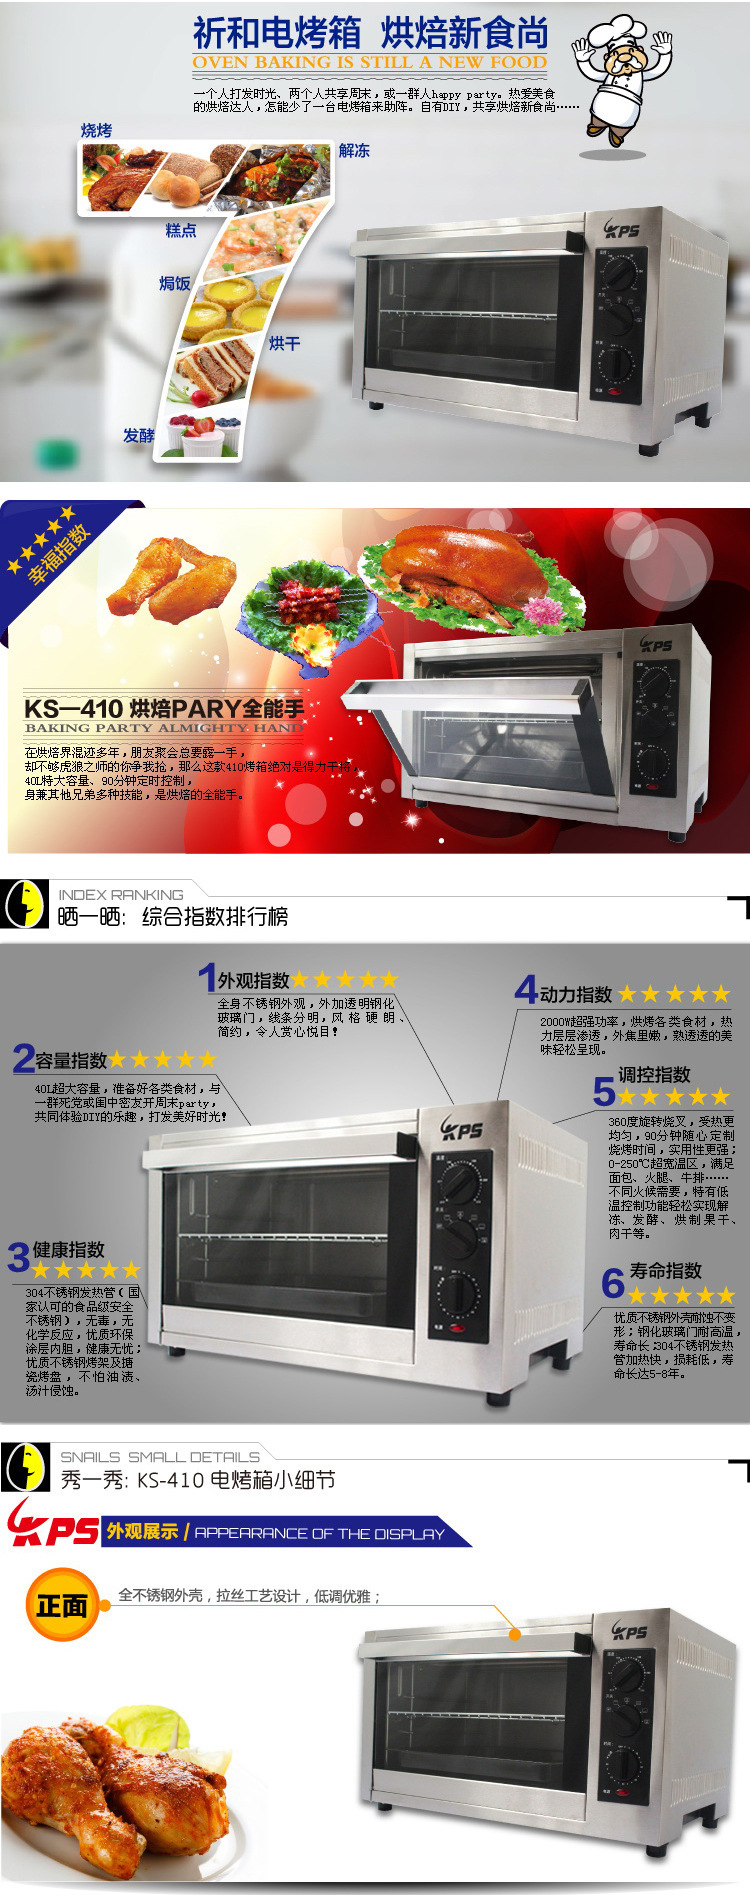 祈和KS-410商用电烤箱 大型40L不锈钢电烤箱 蛋糕面包糕点烘烤炉